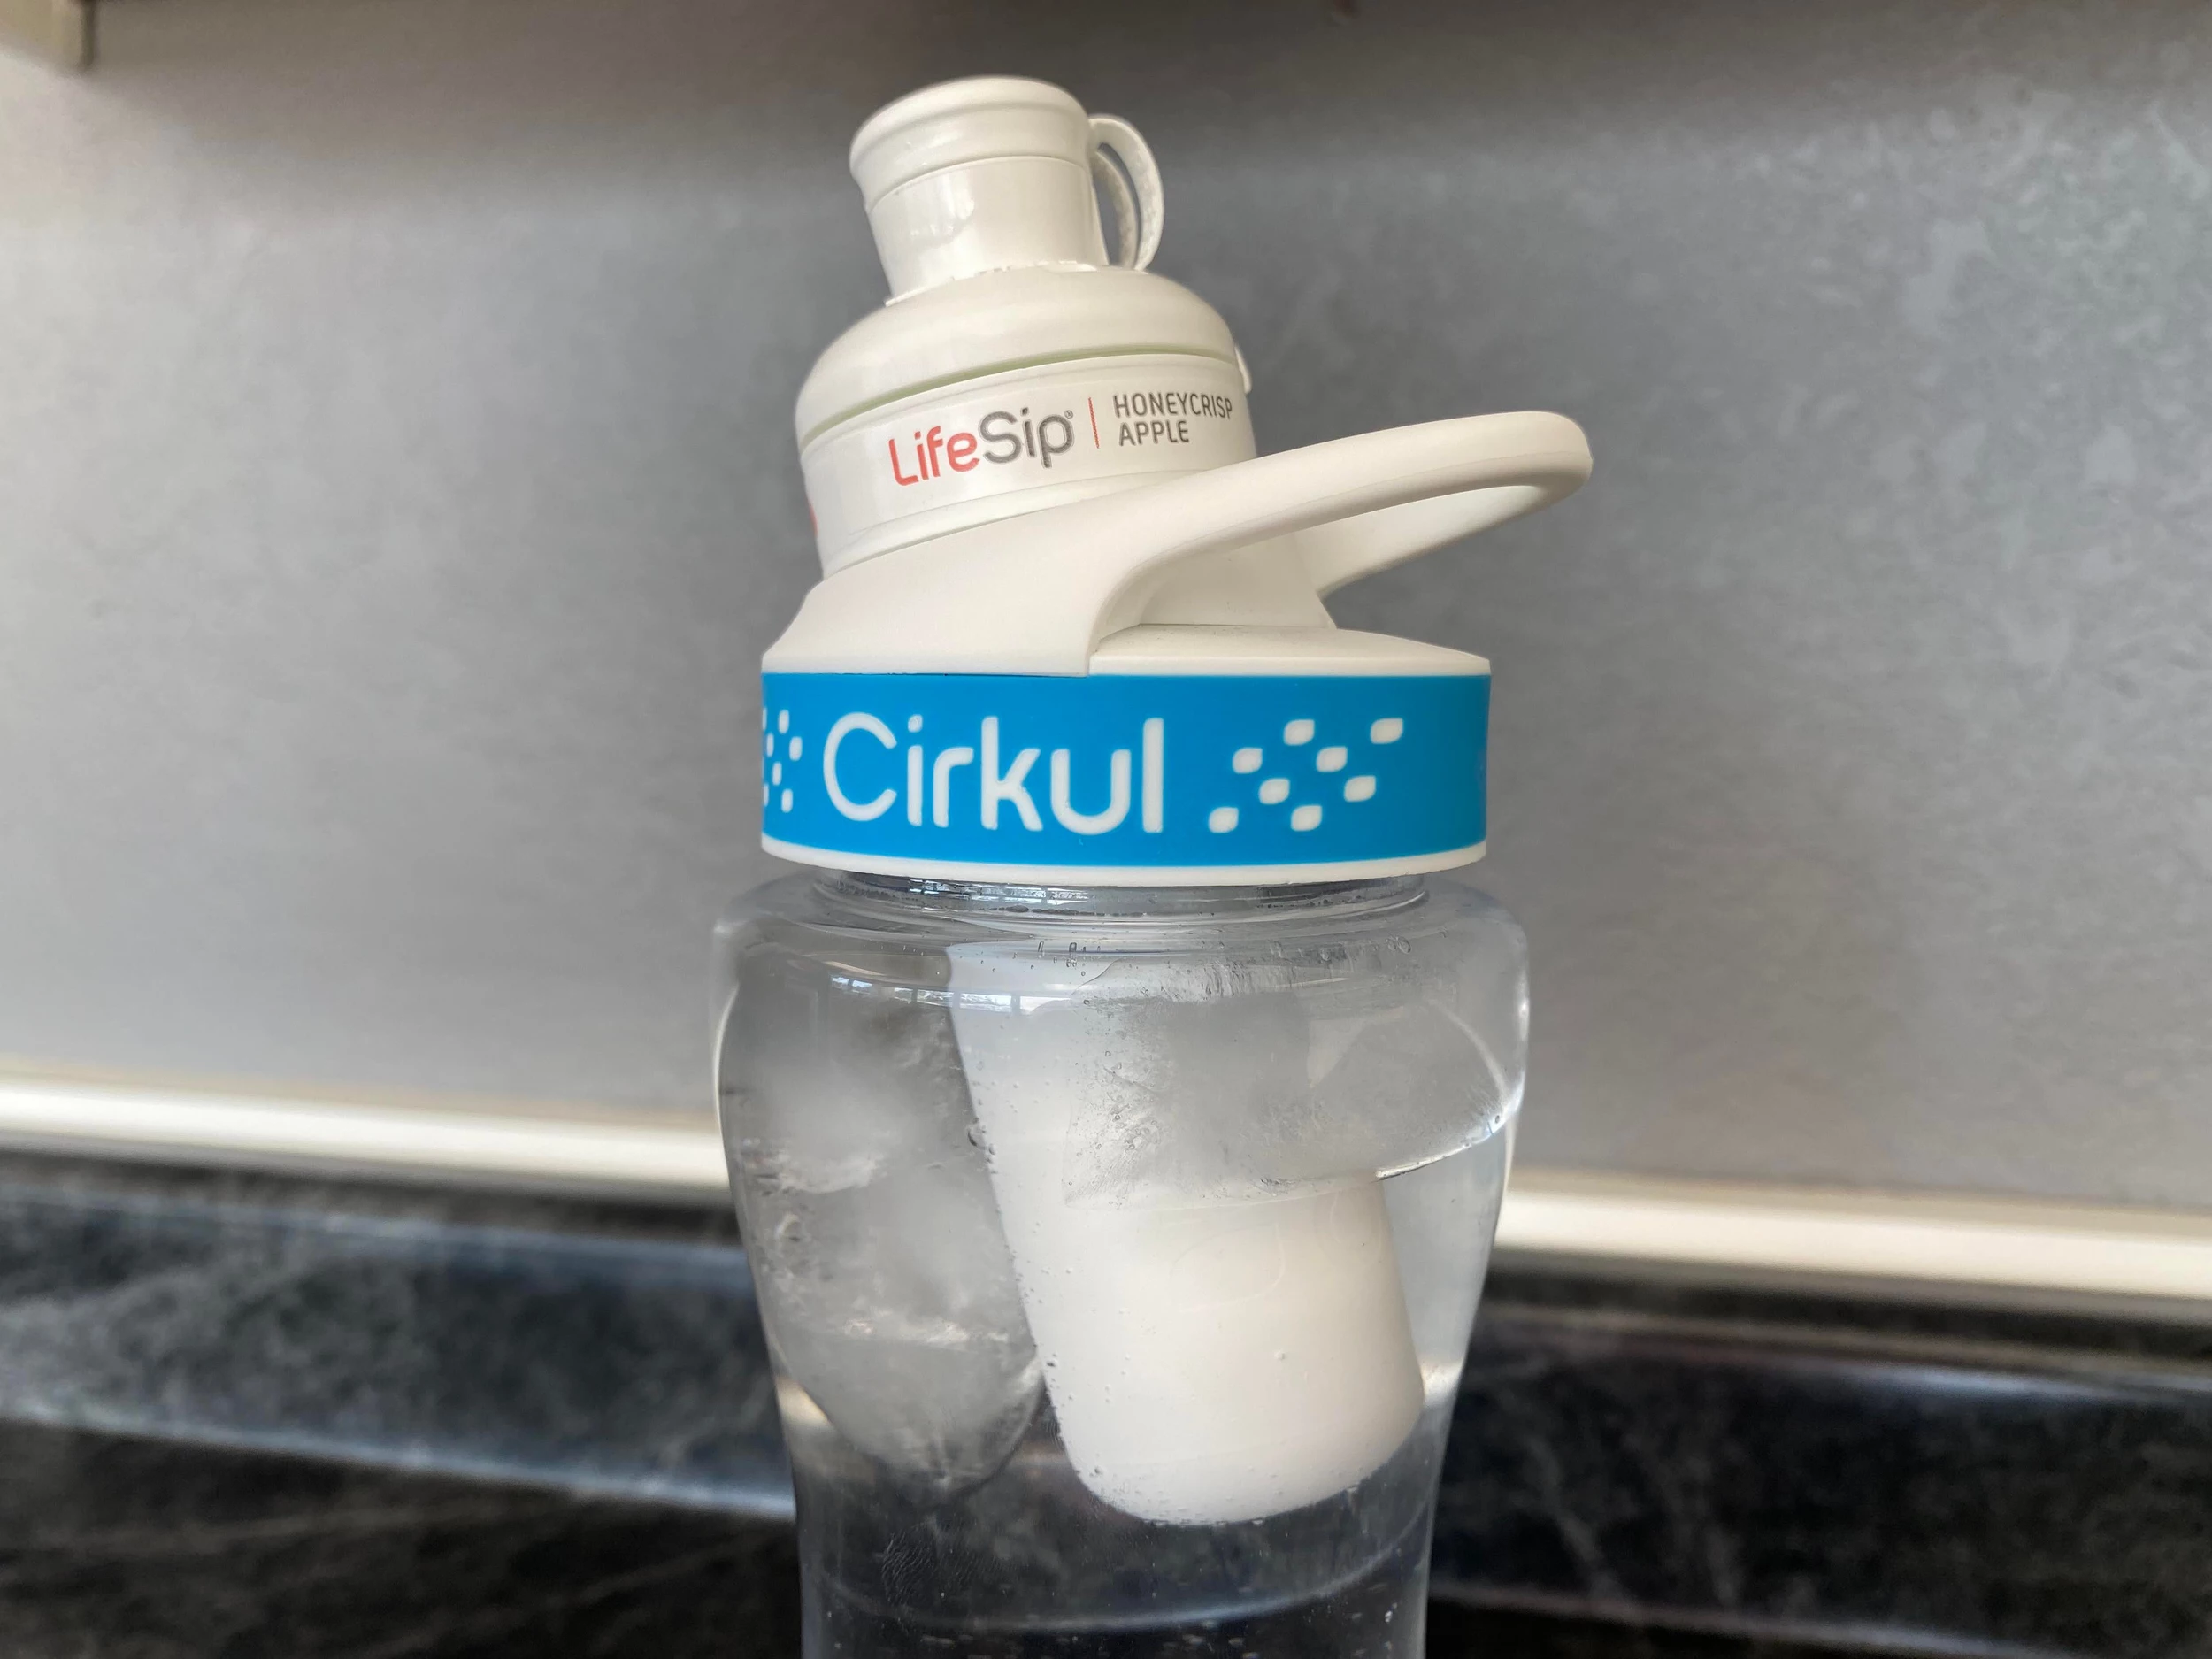 Cirkul Flavored-Water Bottle Startup Valued at $1 Billion